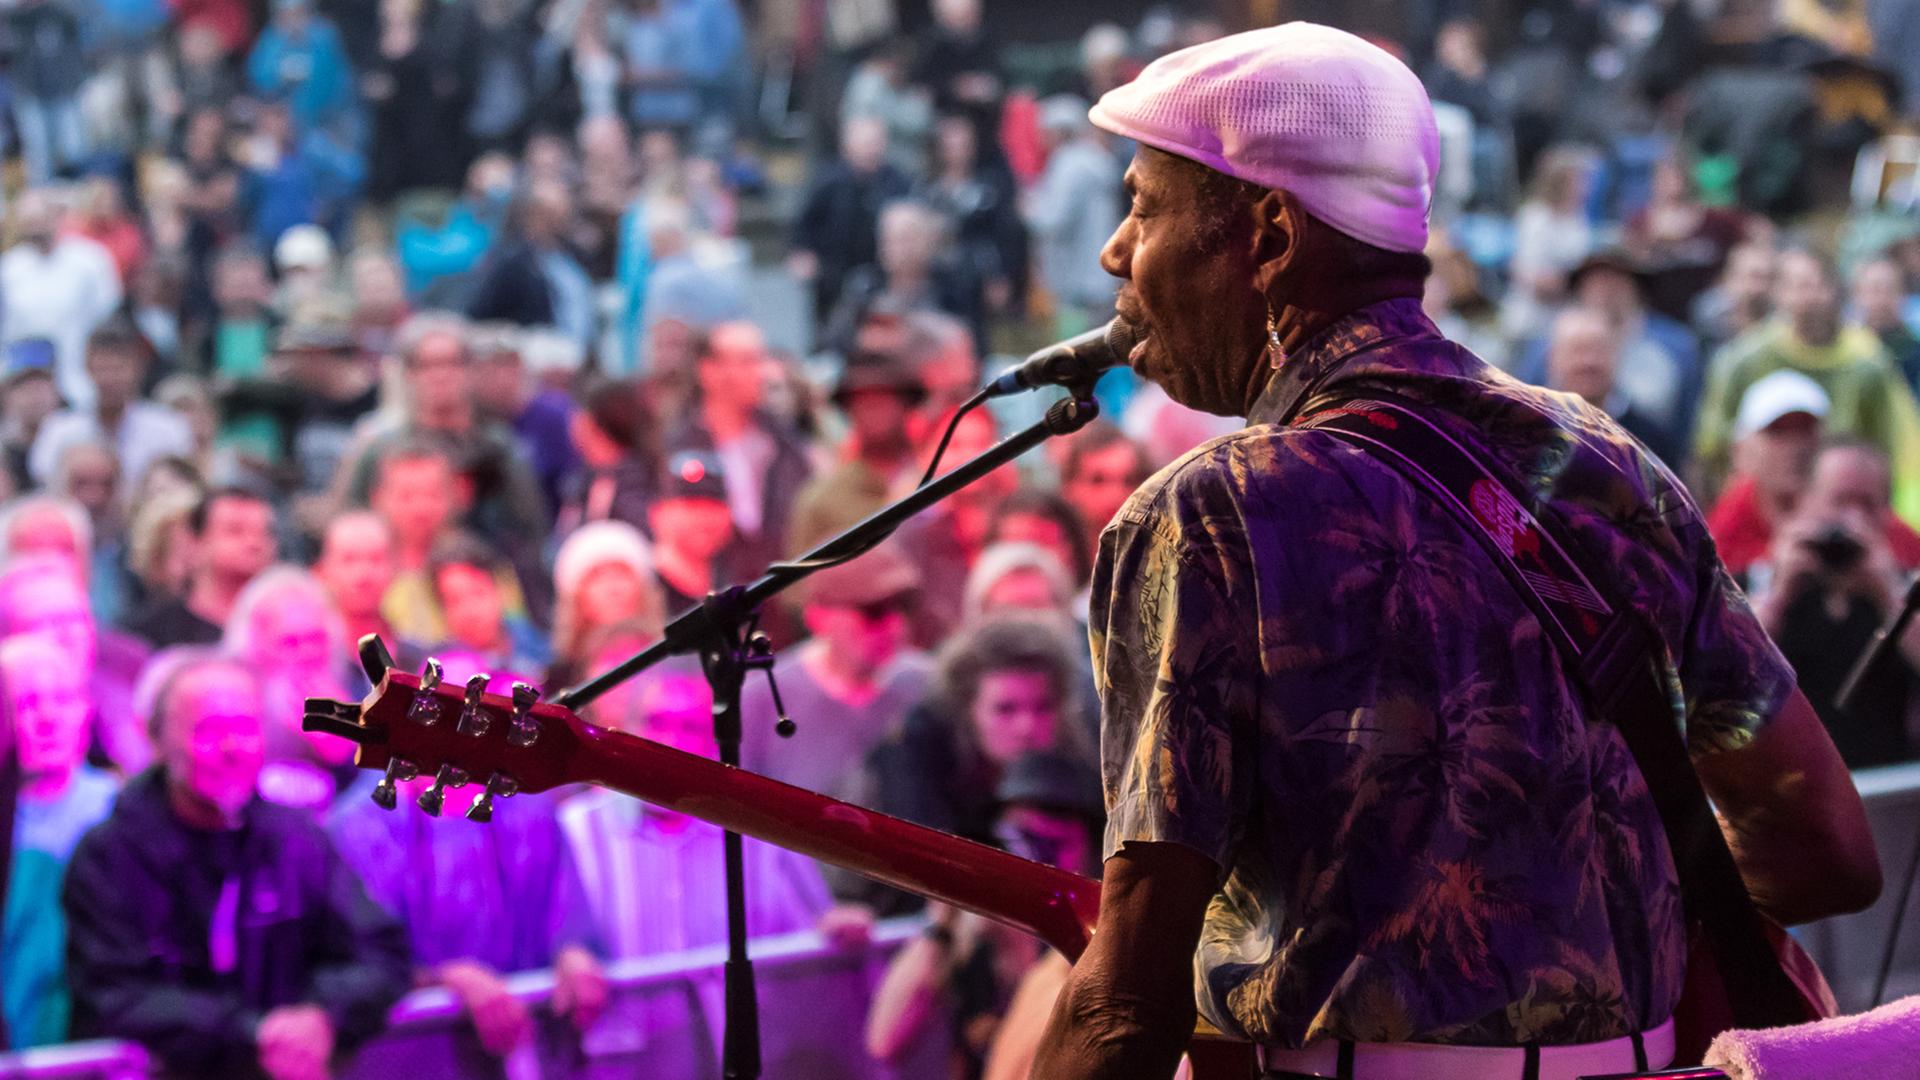 Mann mit Gitarre in der Hand steht mit dem Rücken zur Kamera auf einer Bühne, vor ihm steht Publikum.